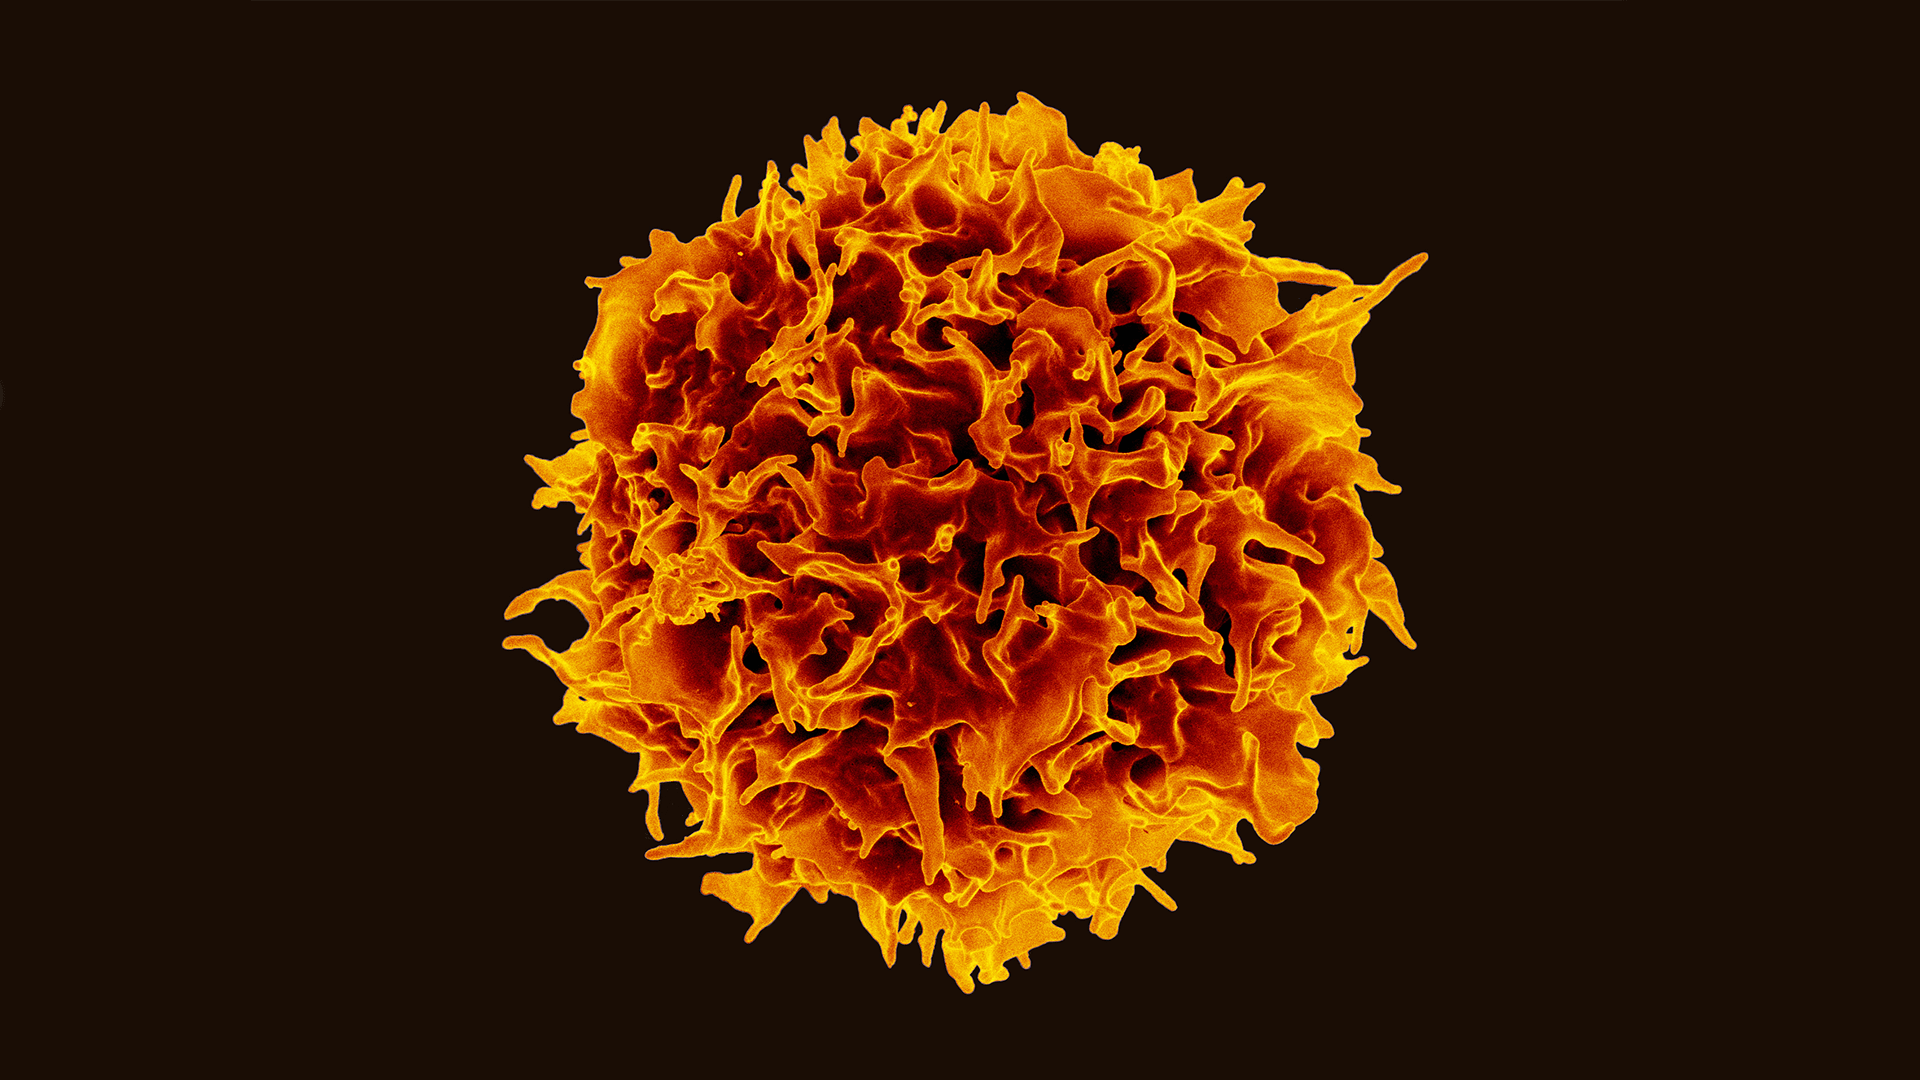 Billede af en t-celle, som er en særlig type af hvide blodlegemer, der findes i vores immunforsvar. Billede: NIAID.